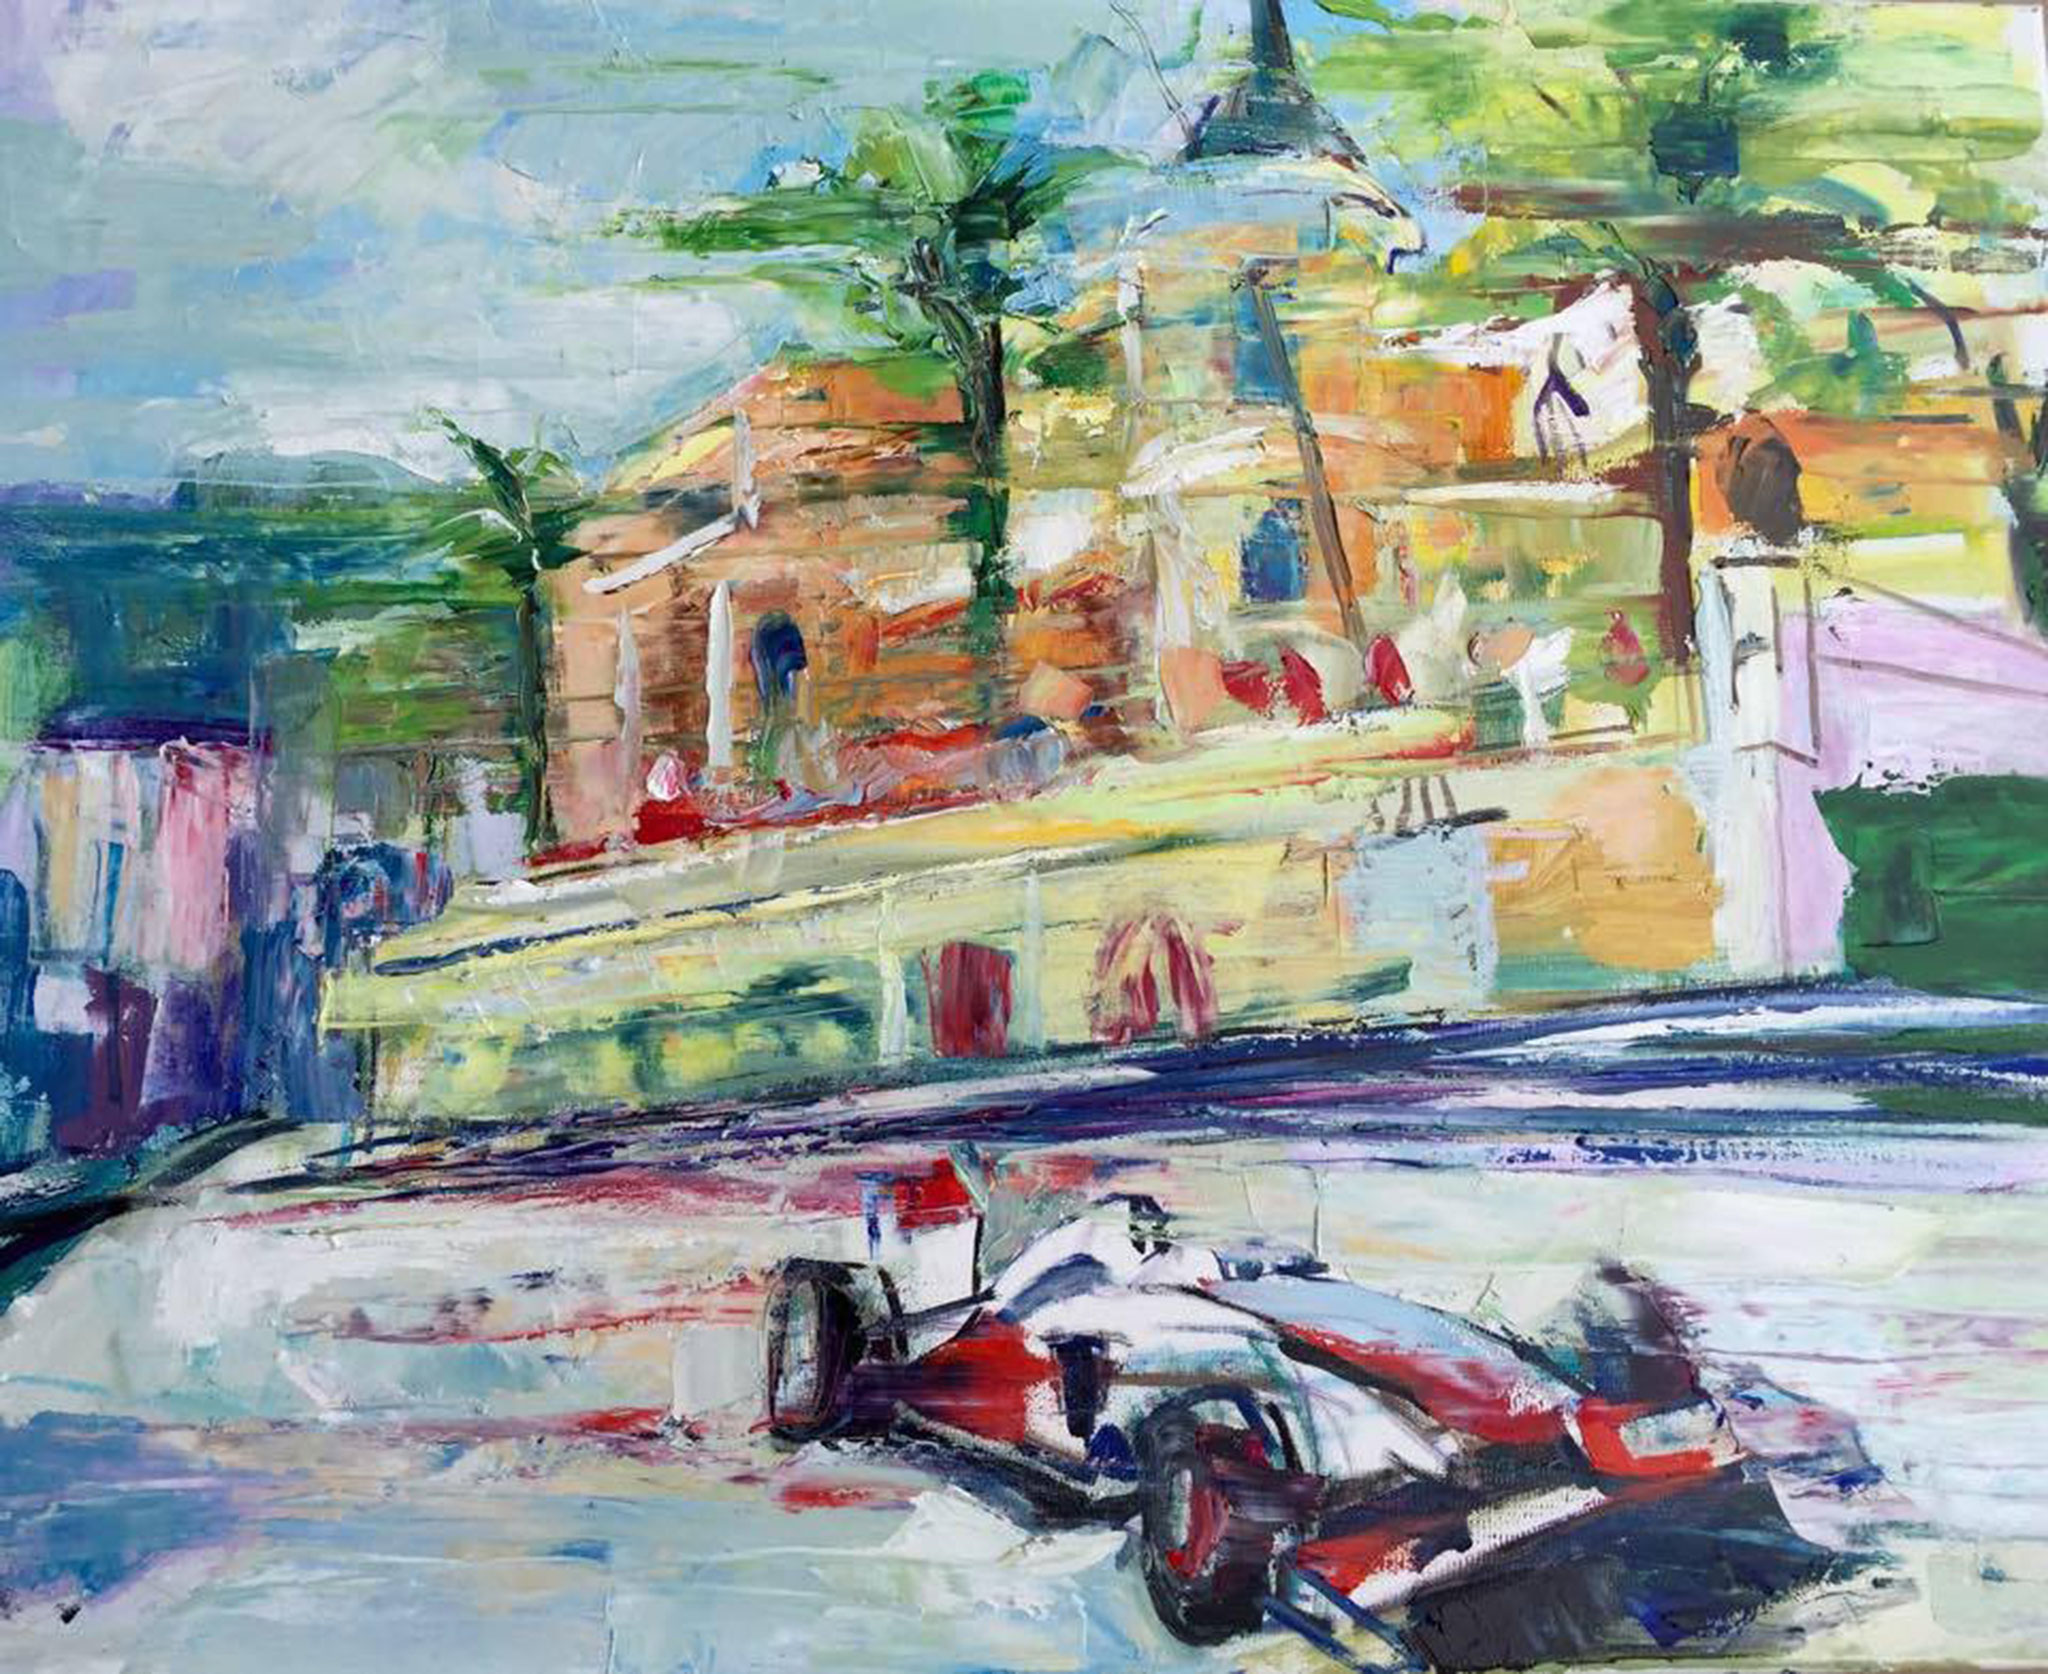 Grand Prix mc, oil on canvas, 40 x 60 cm, 2015